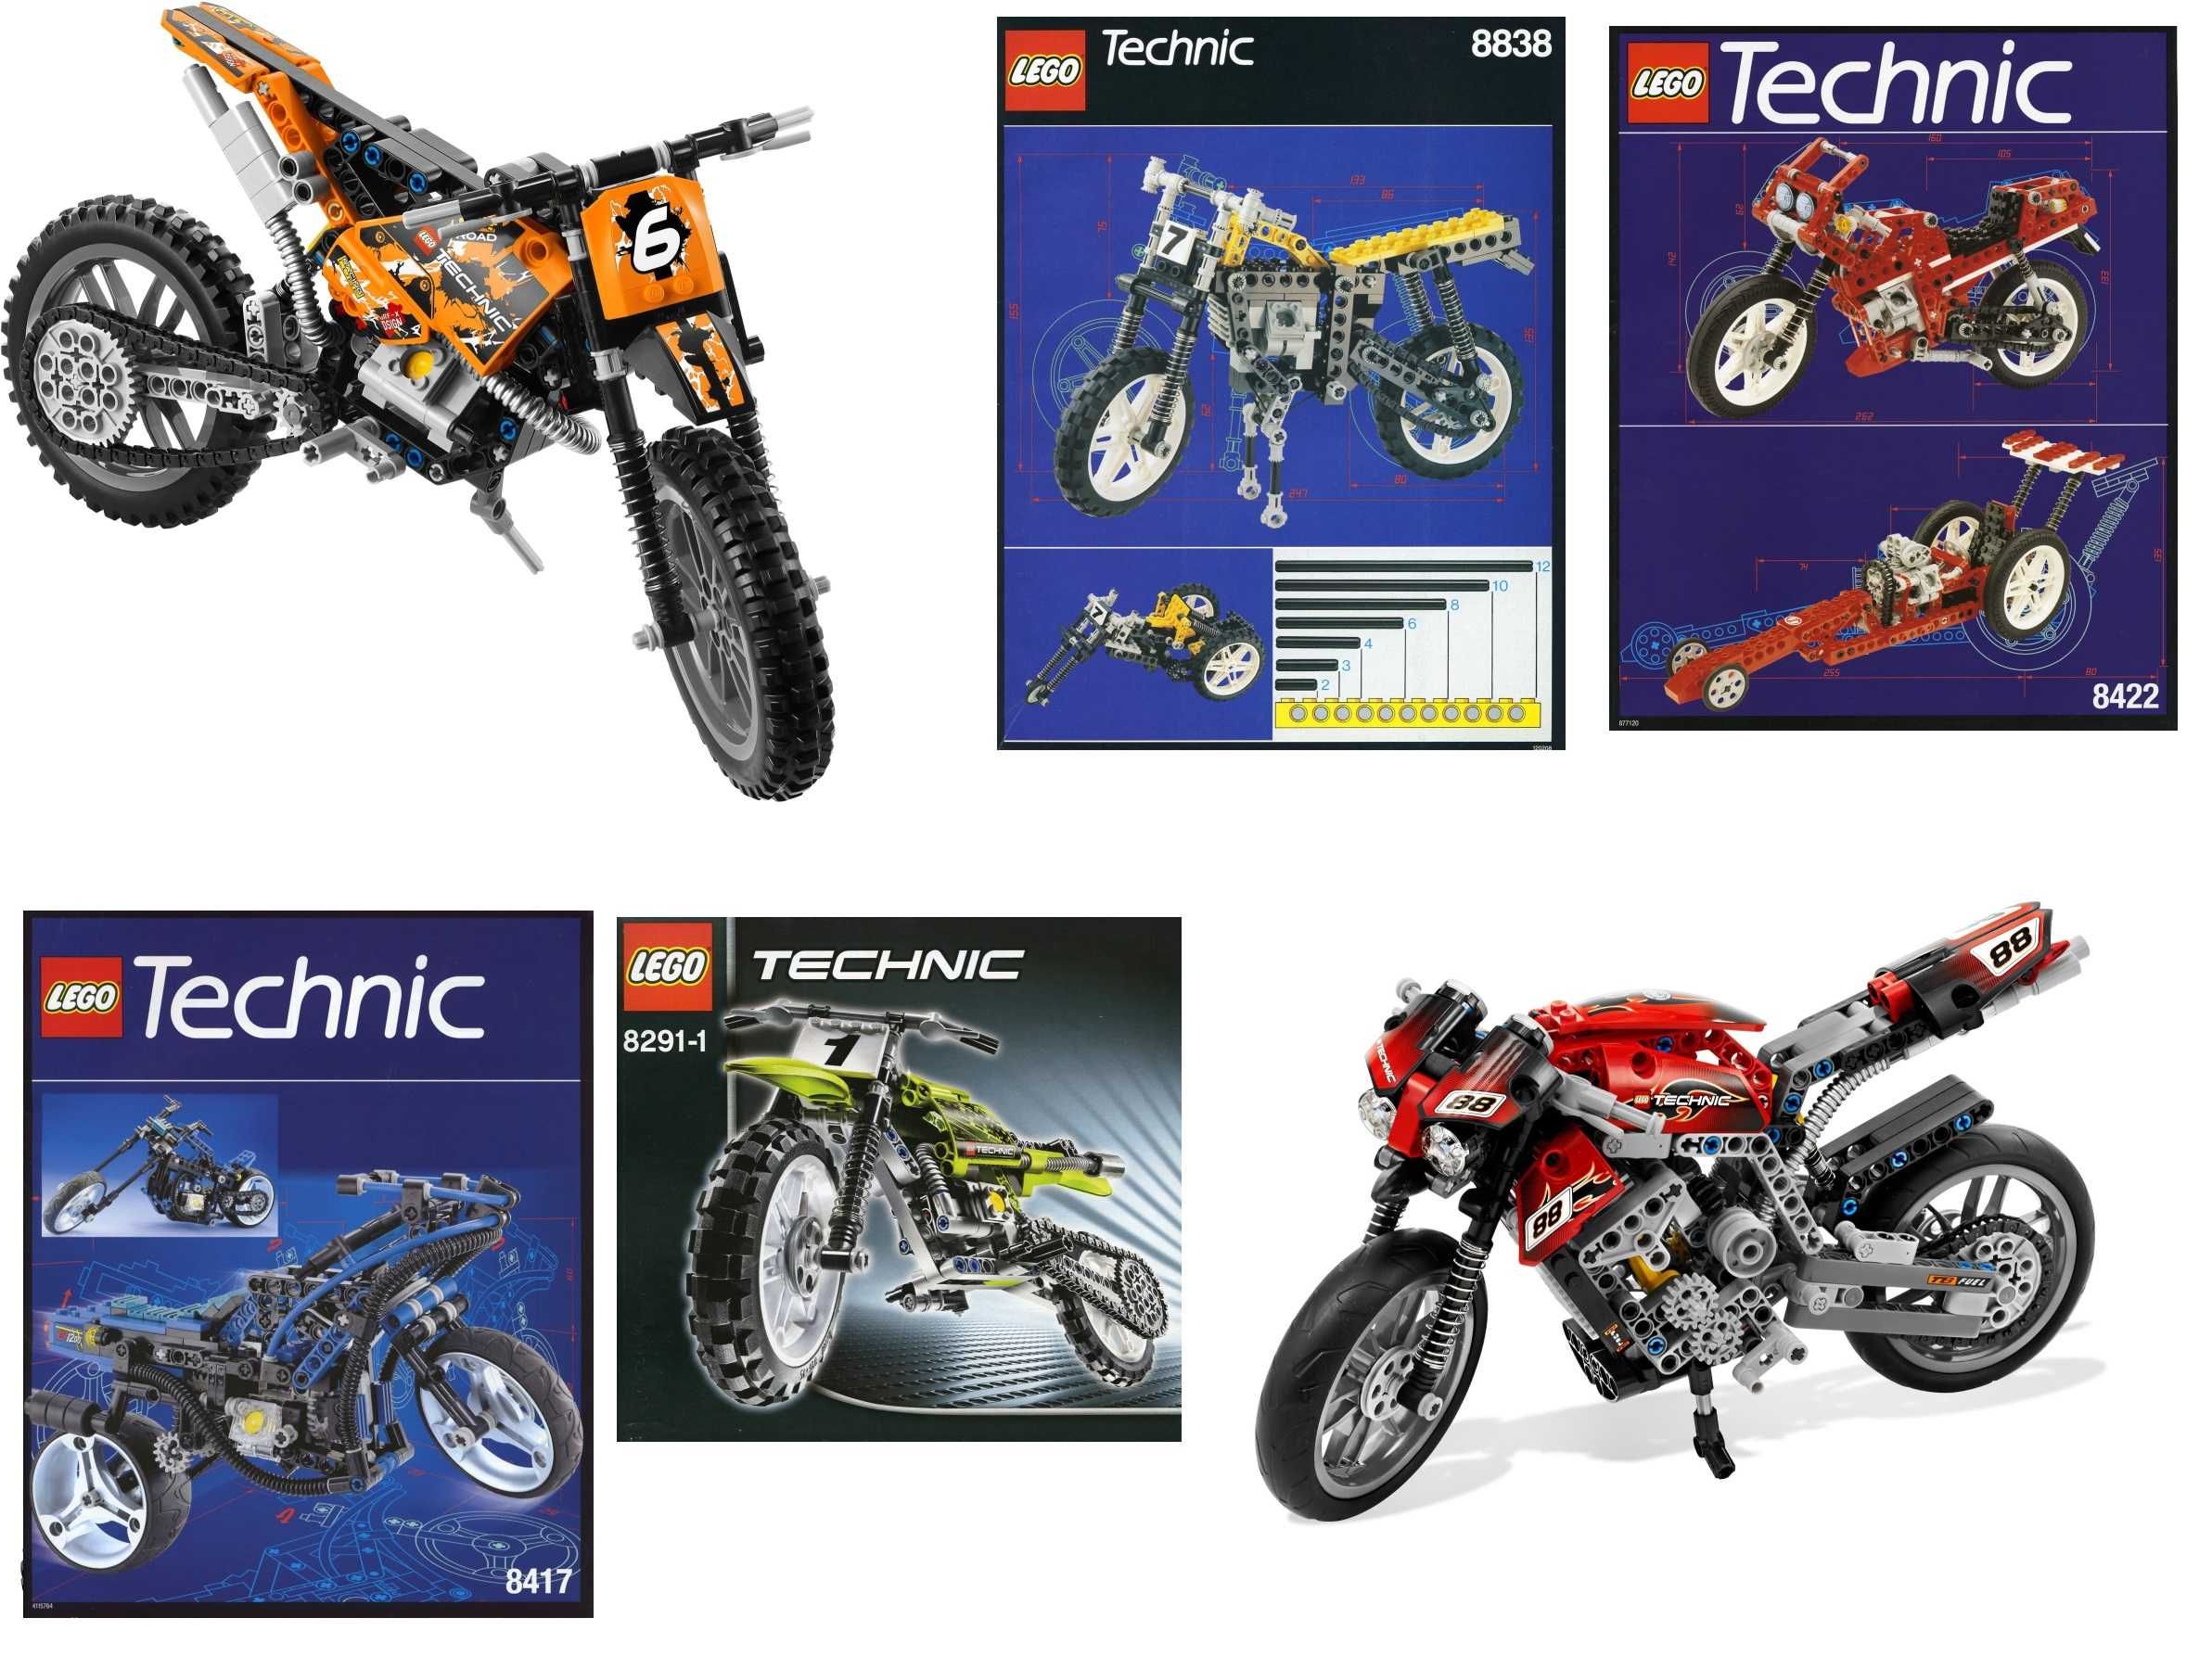 Motocykle LEGO Technic 8051, 8291, 8417, 8848, 8422, 42063 i inne